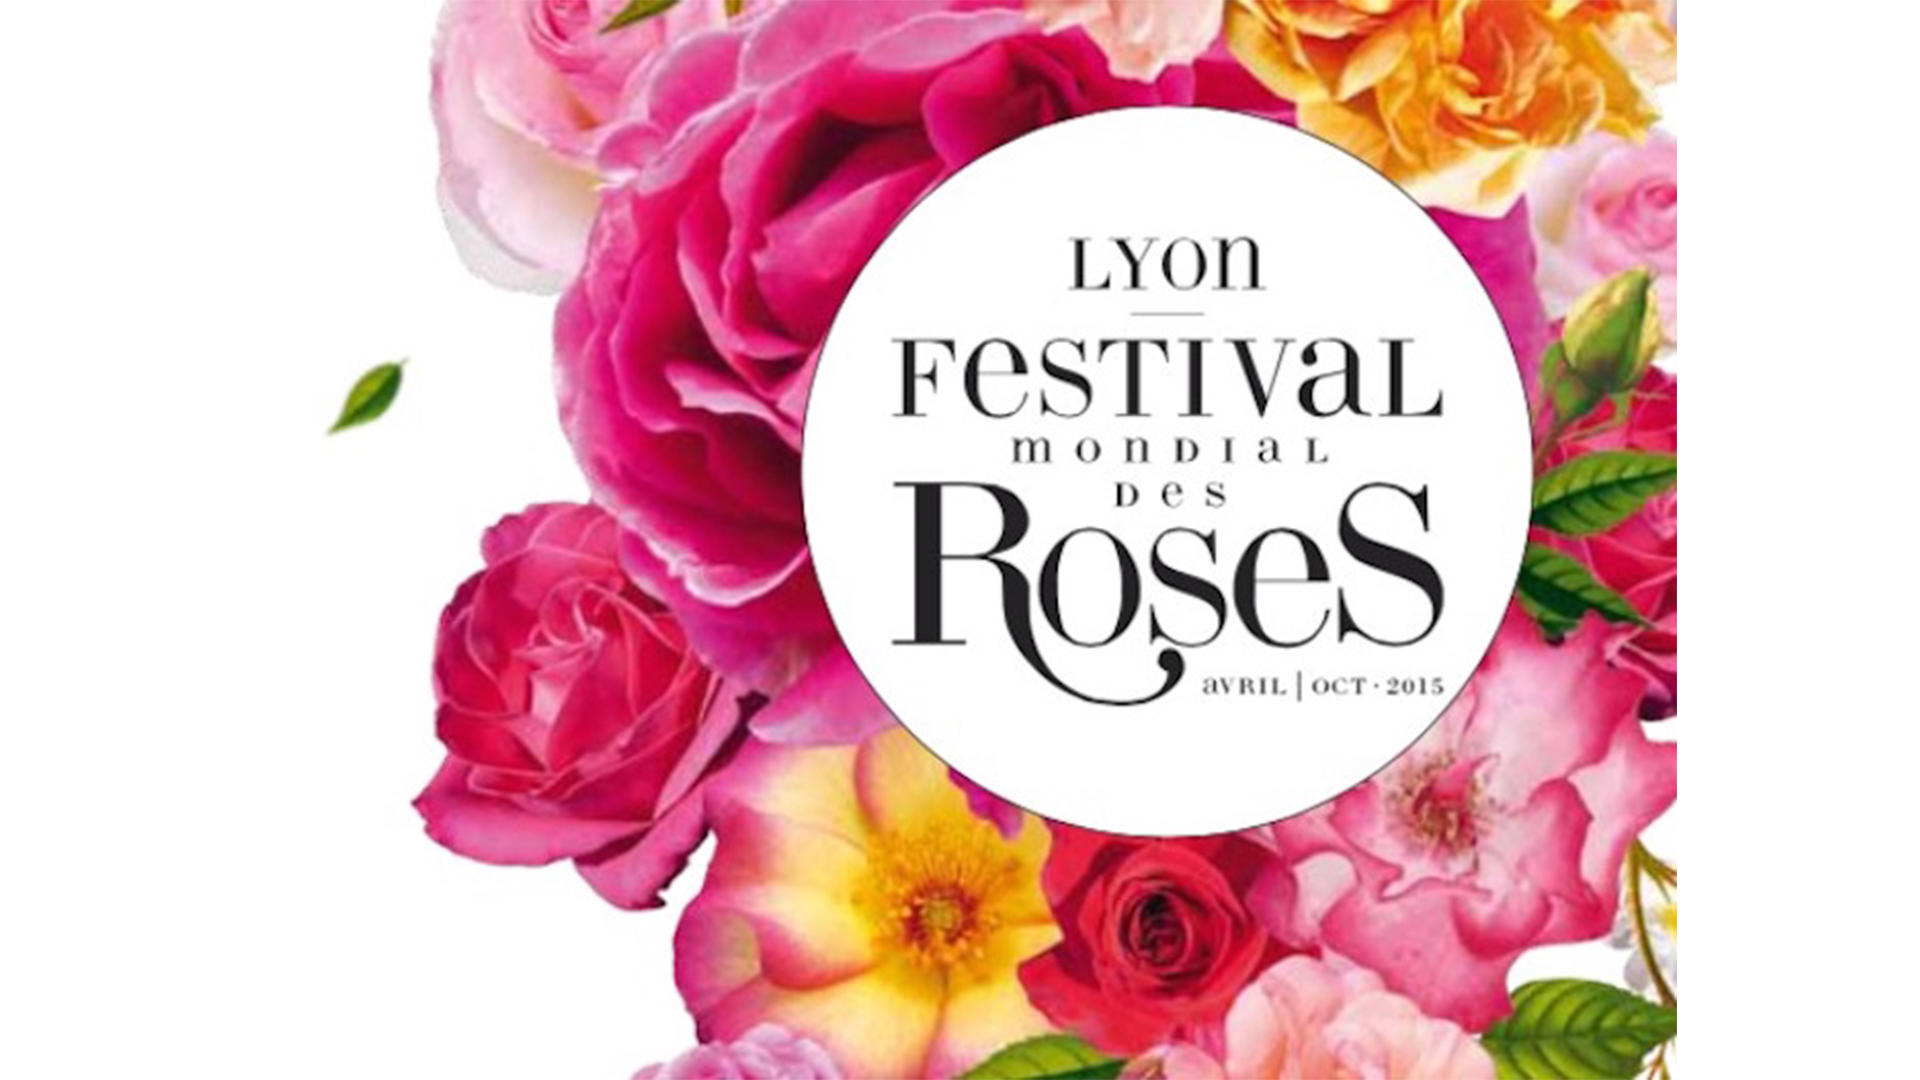 Lyon Festival mondial des Roses_Conférence Nacarat Design